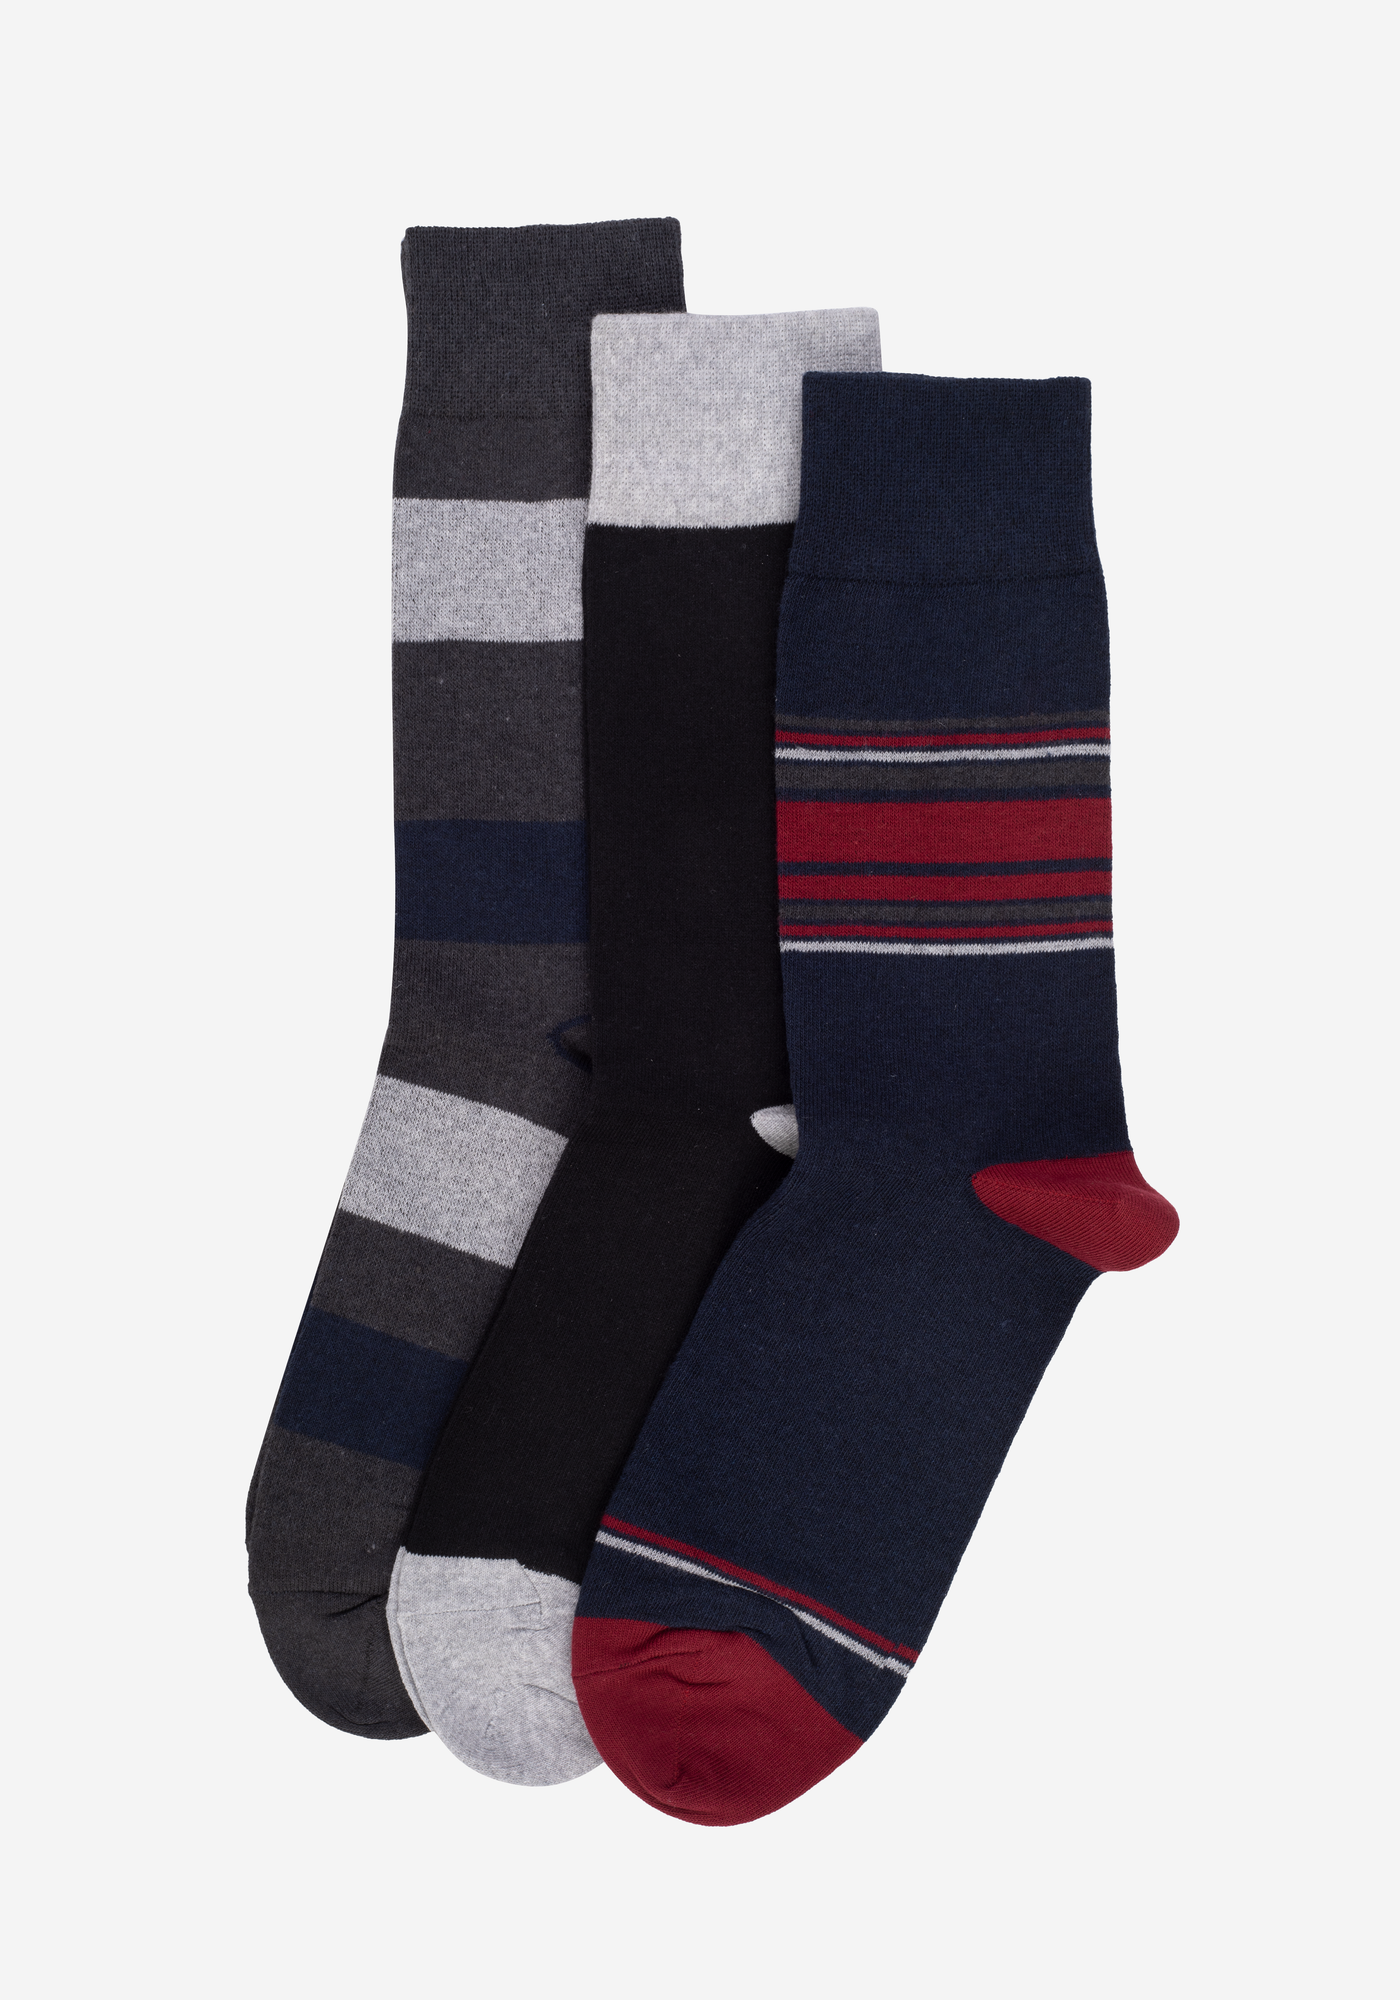 P3*1-939-3 / 3 Long Socks Pack